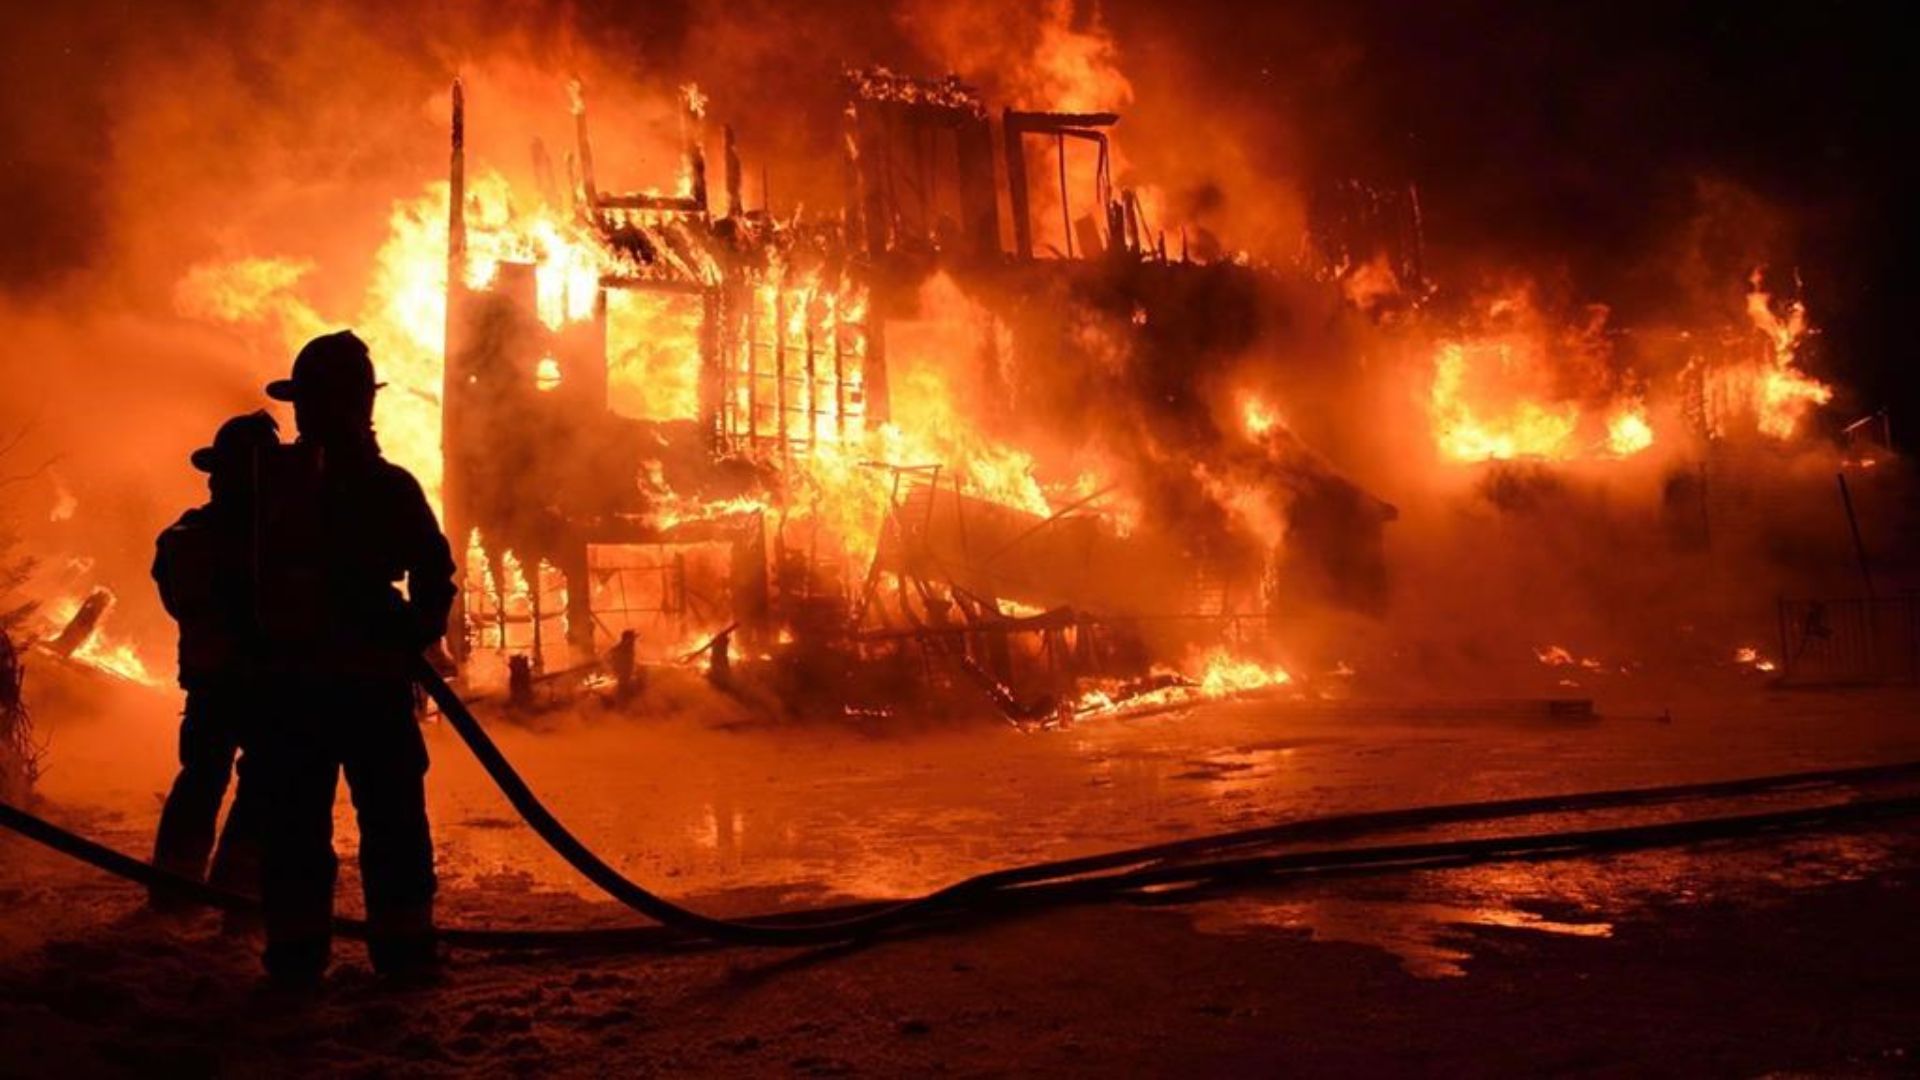 L’incendie, survenu le 23 janvier 2014 à la Résidence du Havre, avait coûté la vie à 32 personnes âgées, bouleversant la province entière.